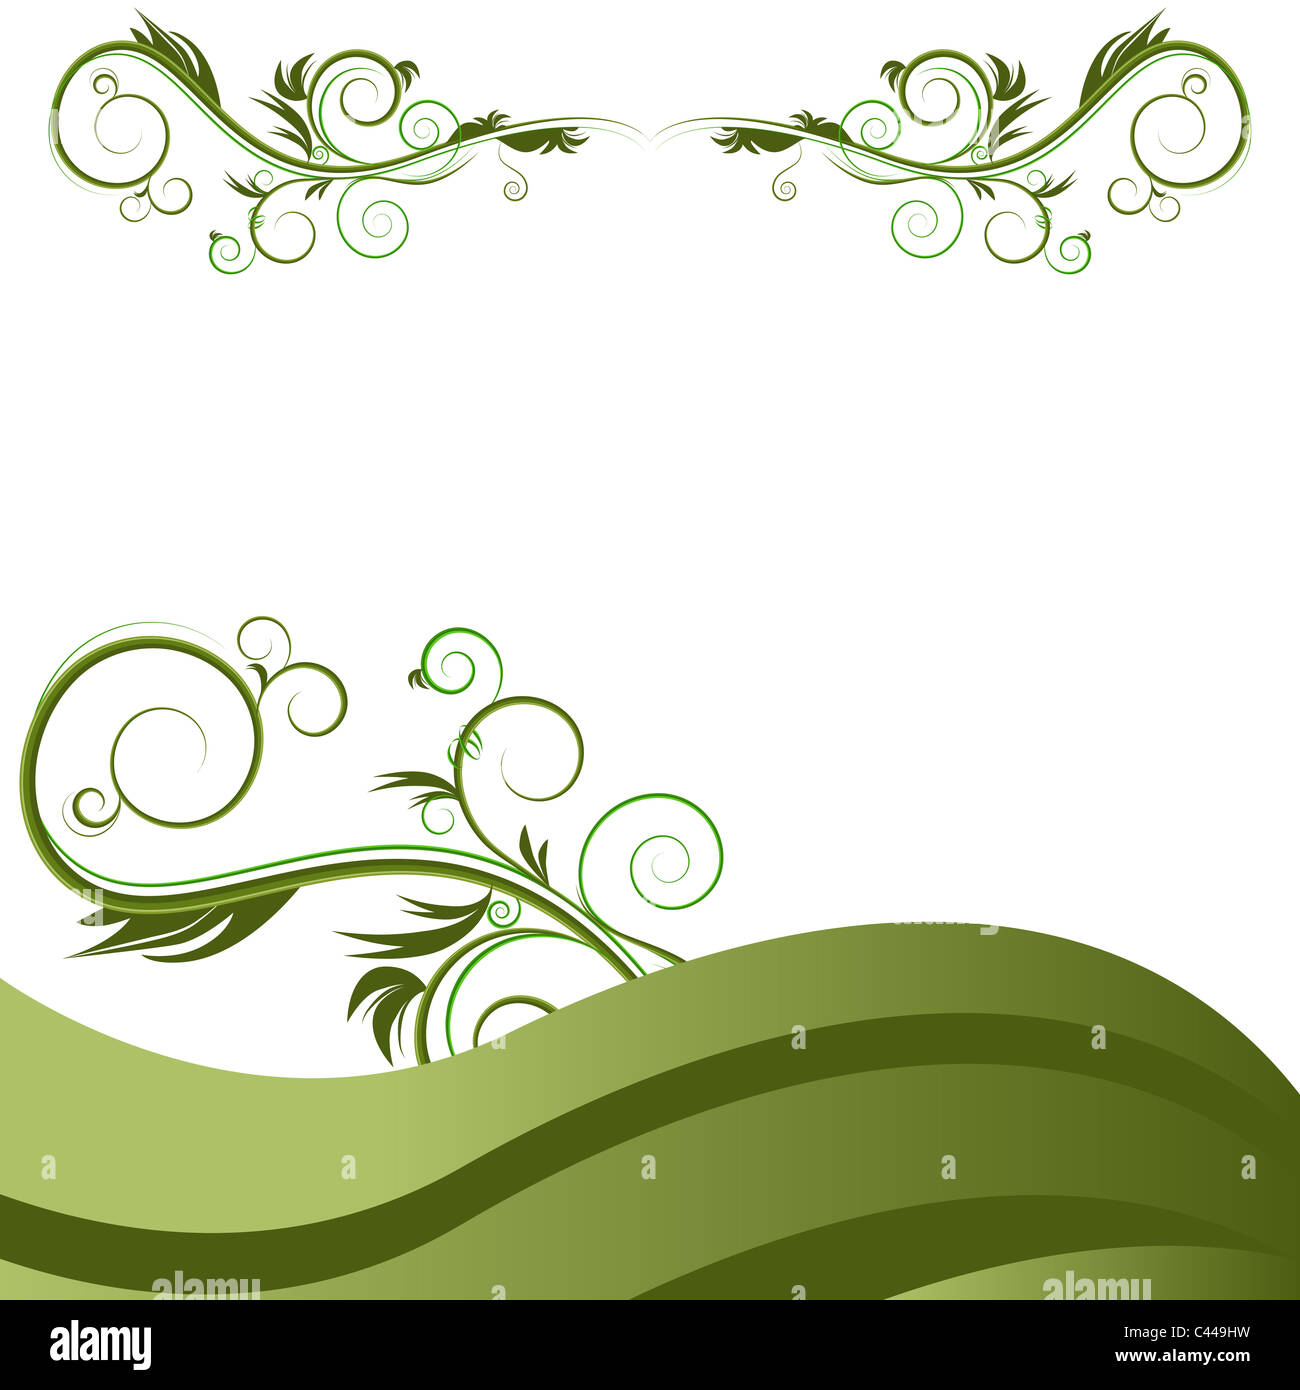 Ein Bild von einem grüne Welle Reben gedeihen Hintergrund. Stockfoto